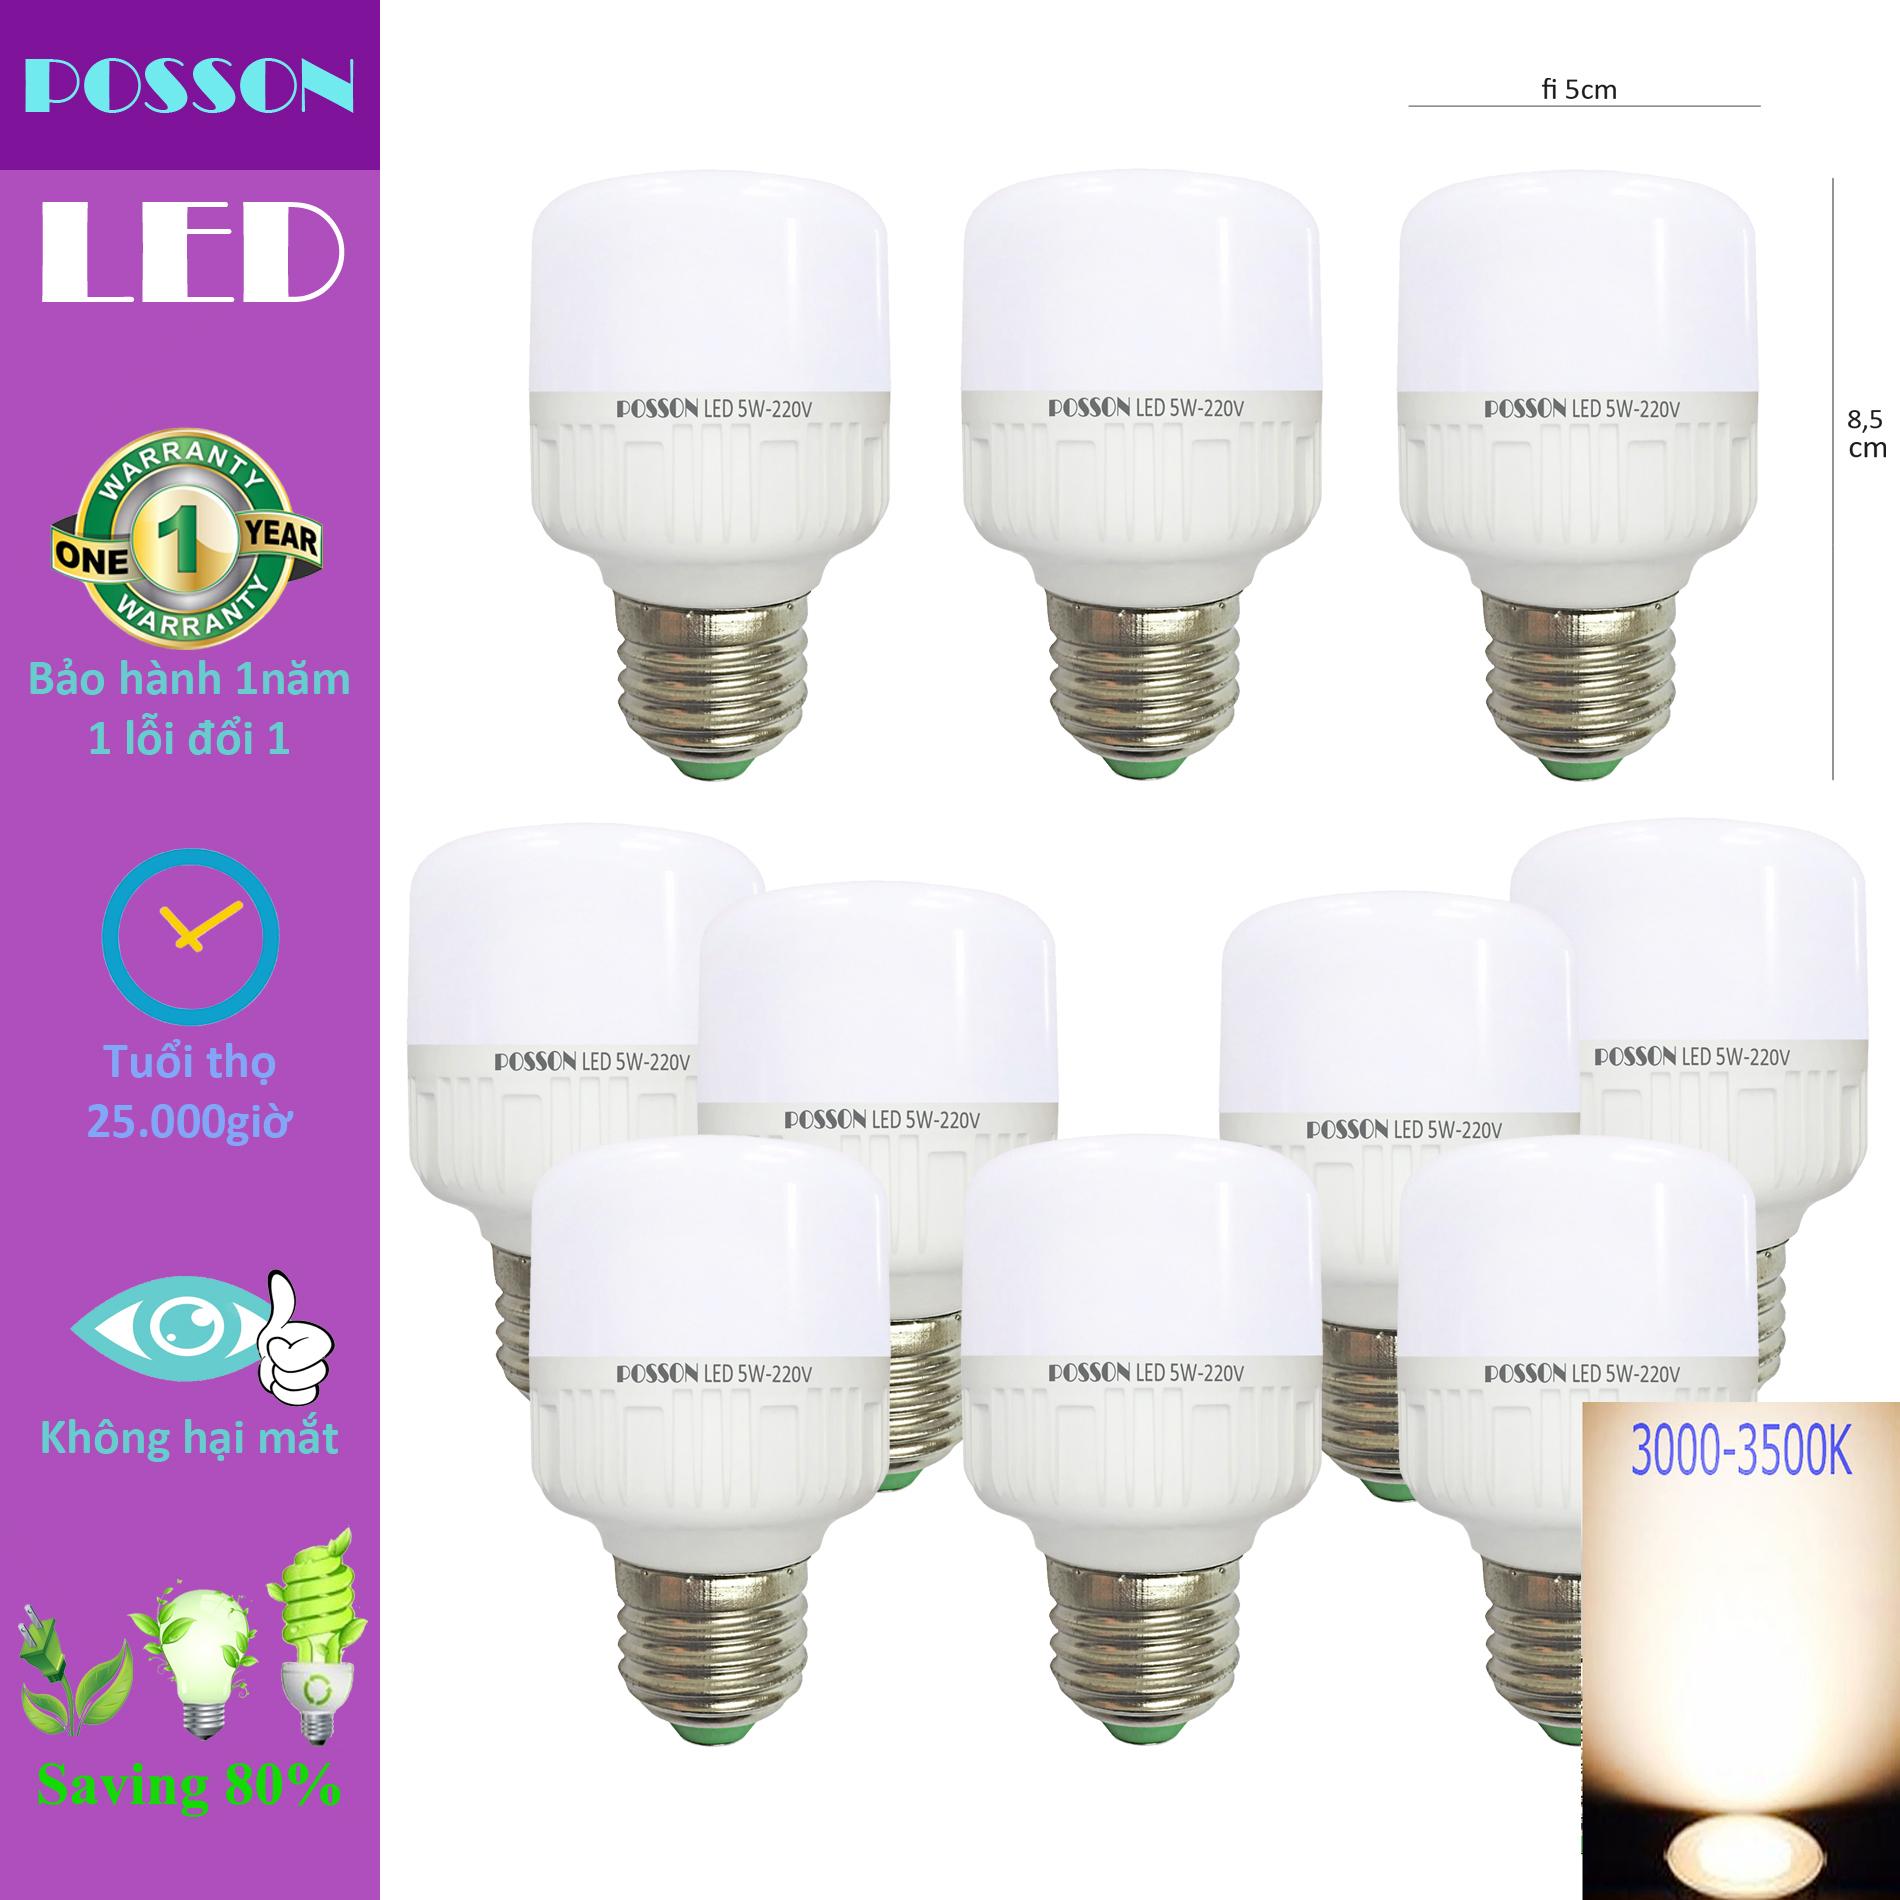 10 Bóng đèn Led trụ 5w tiết kiệm điện sáng vàng ấm Posson LC-N5G